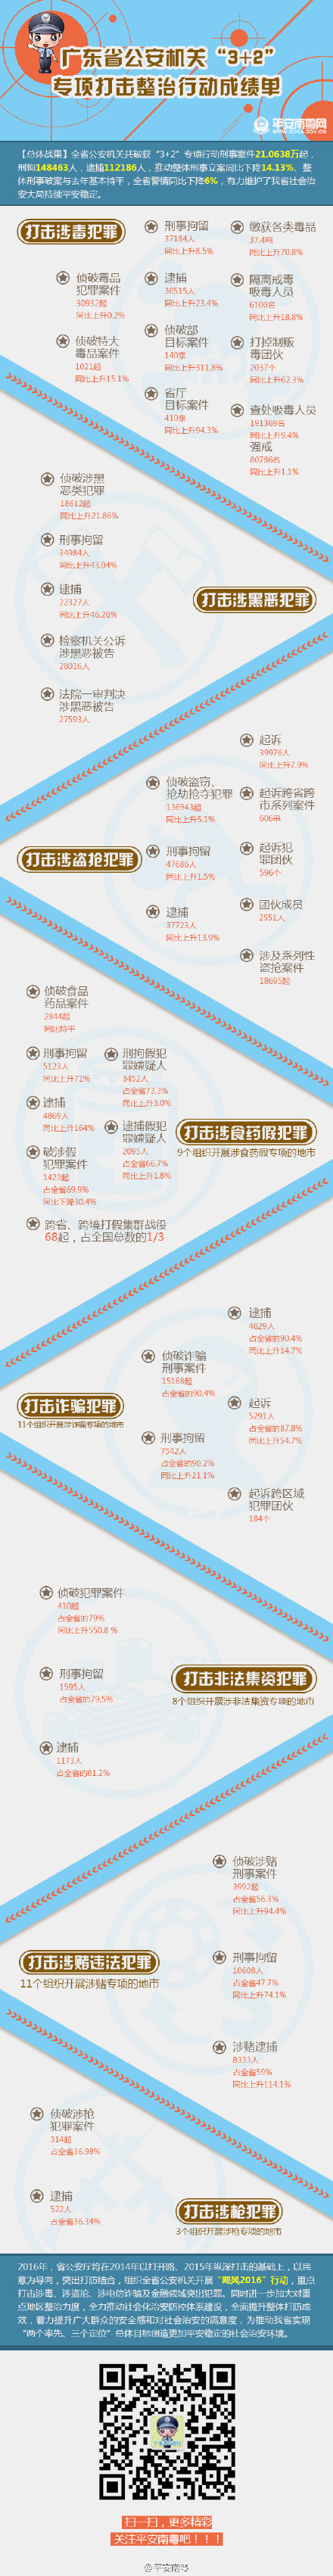 广东警方晒“3+2”打击成绩单 全省警情同比下降6%